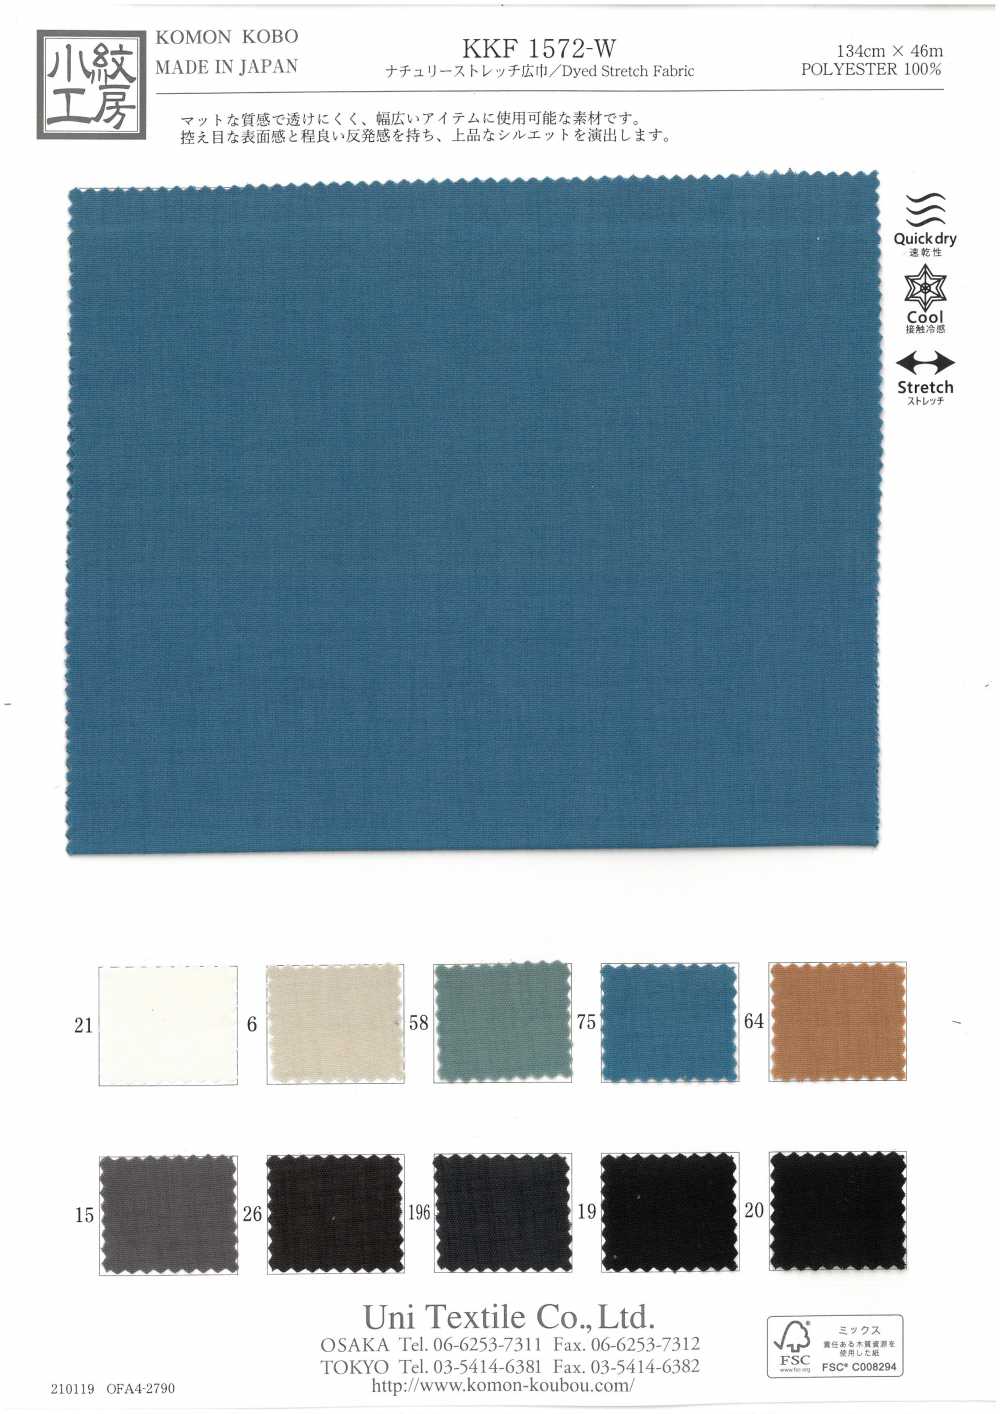 KKF1572-W Natürliche Stretchbreite[Textilgewebe] Uni Textile